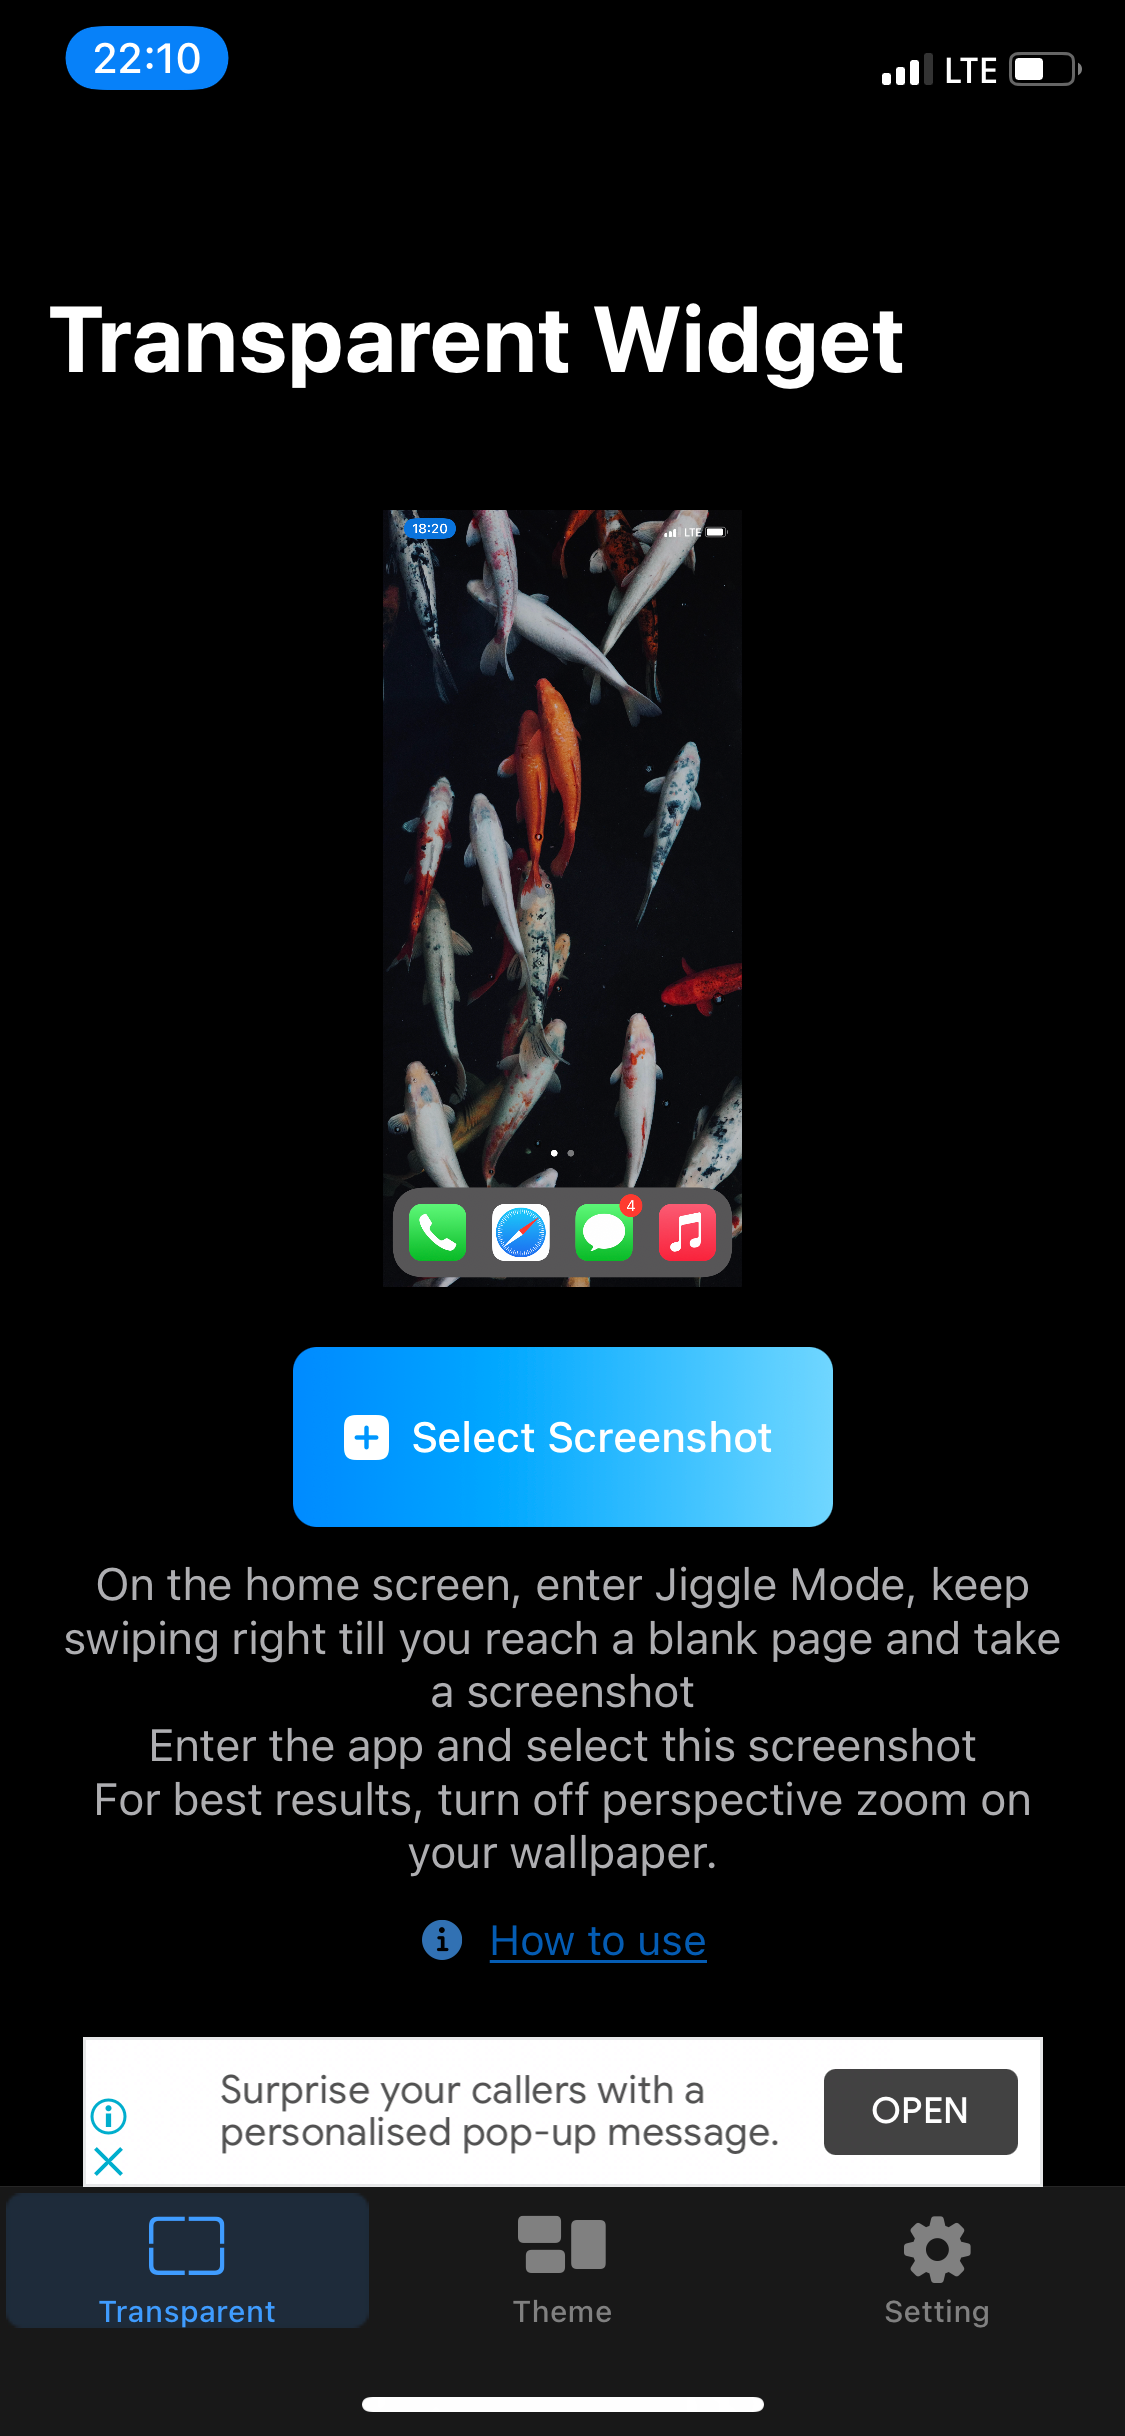 TWid home screen screenshot upload